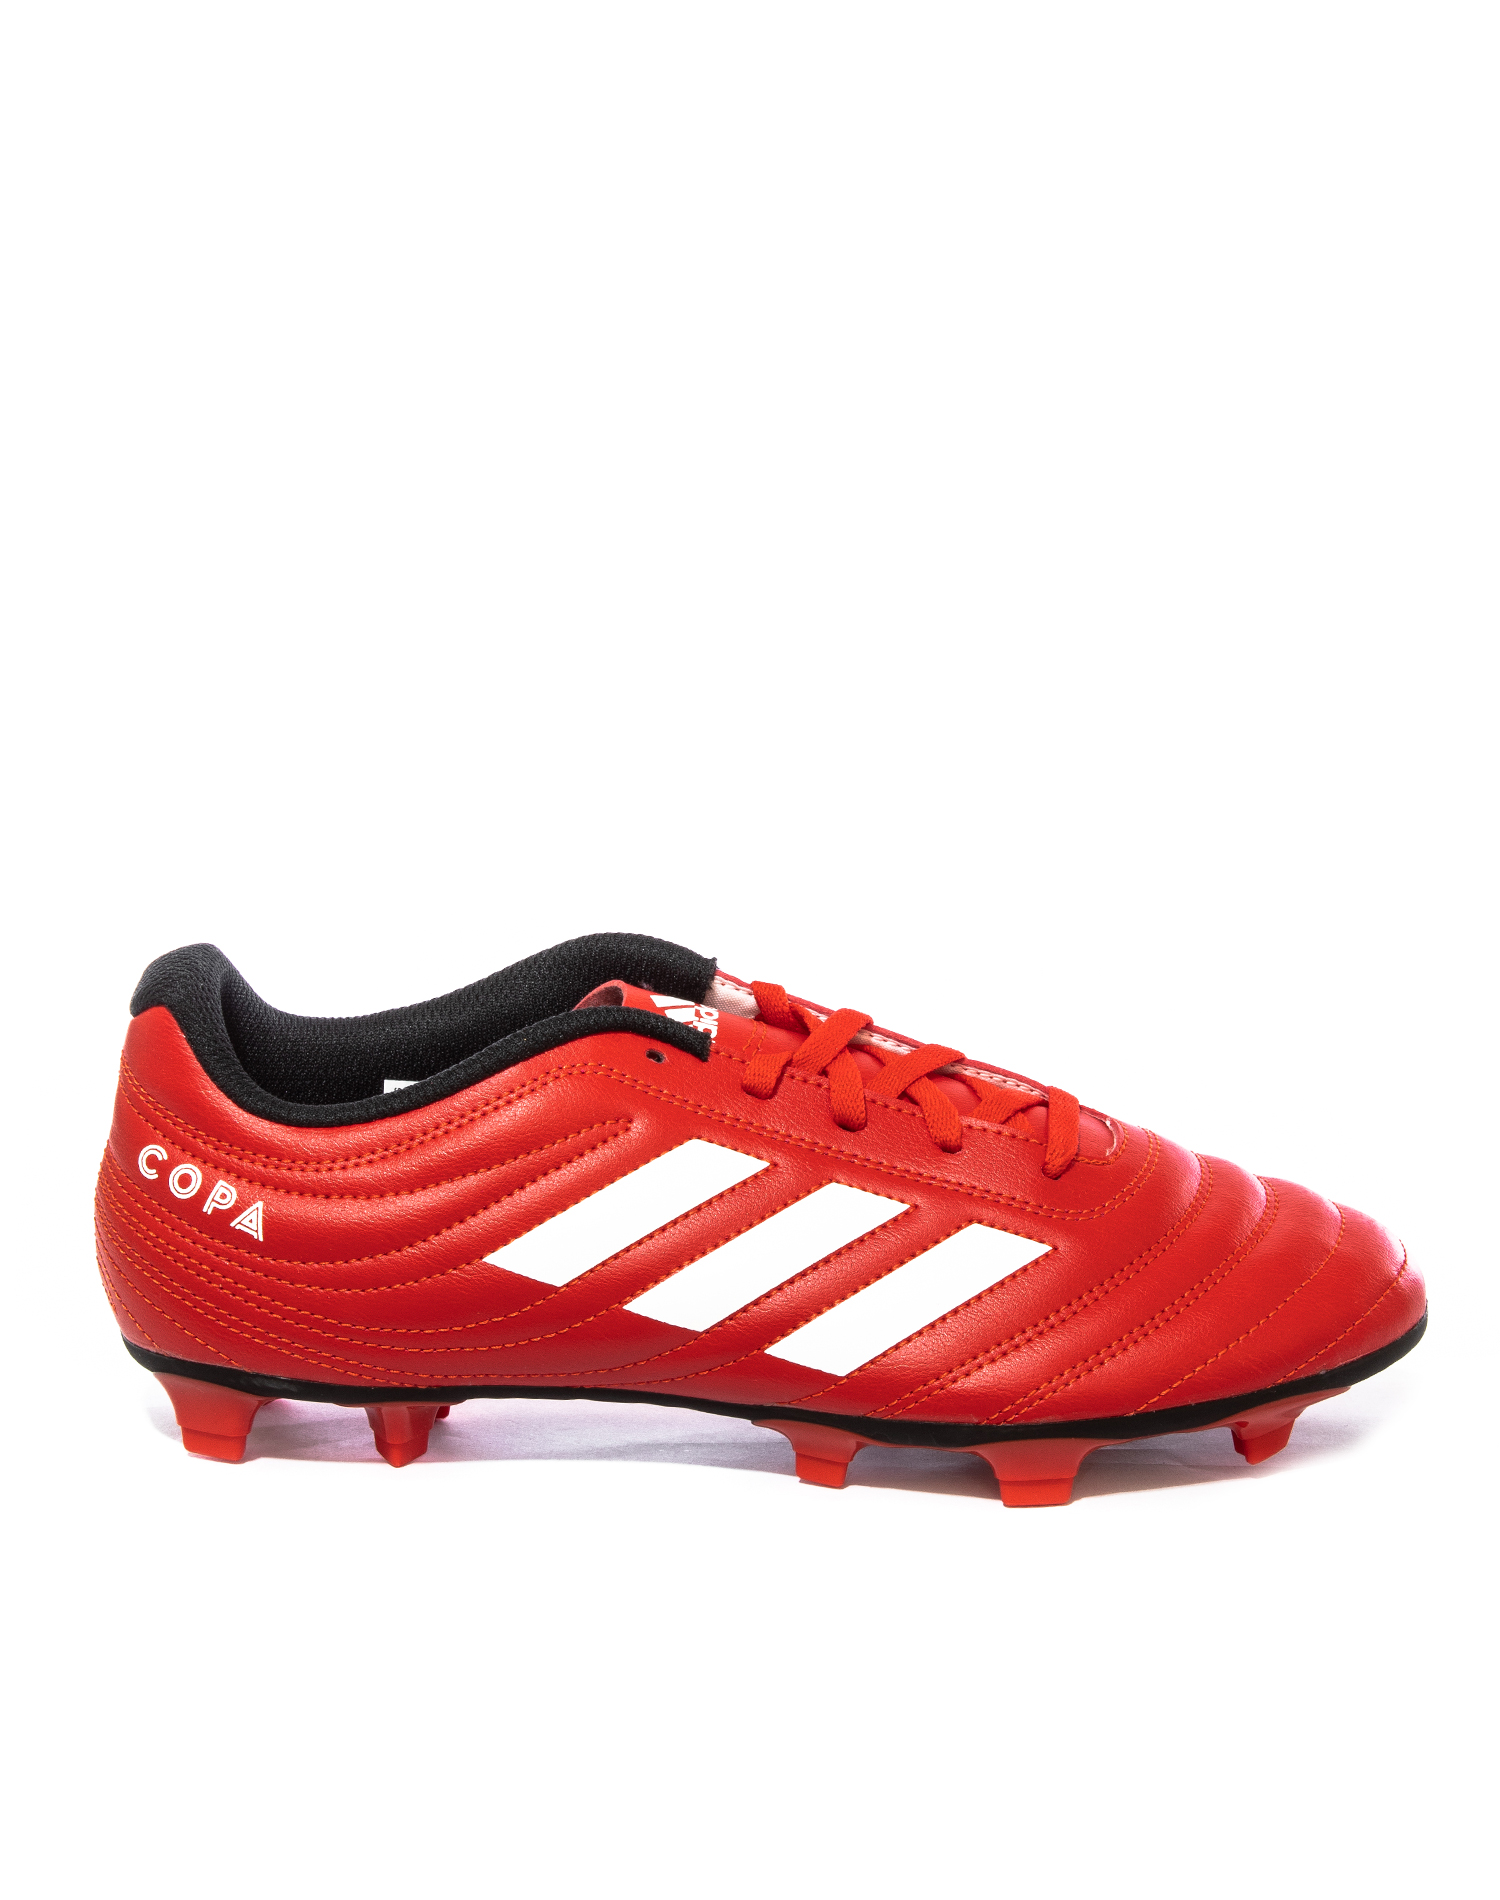 Zapatos Futbol Adidas 20.4 Rojo - Golero